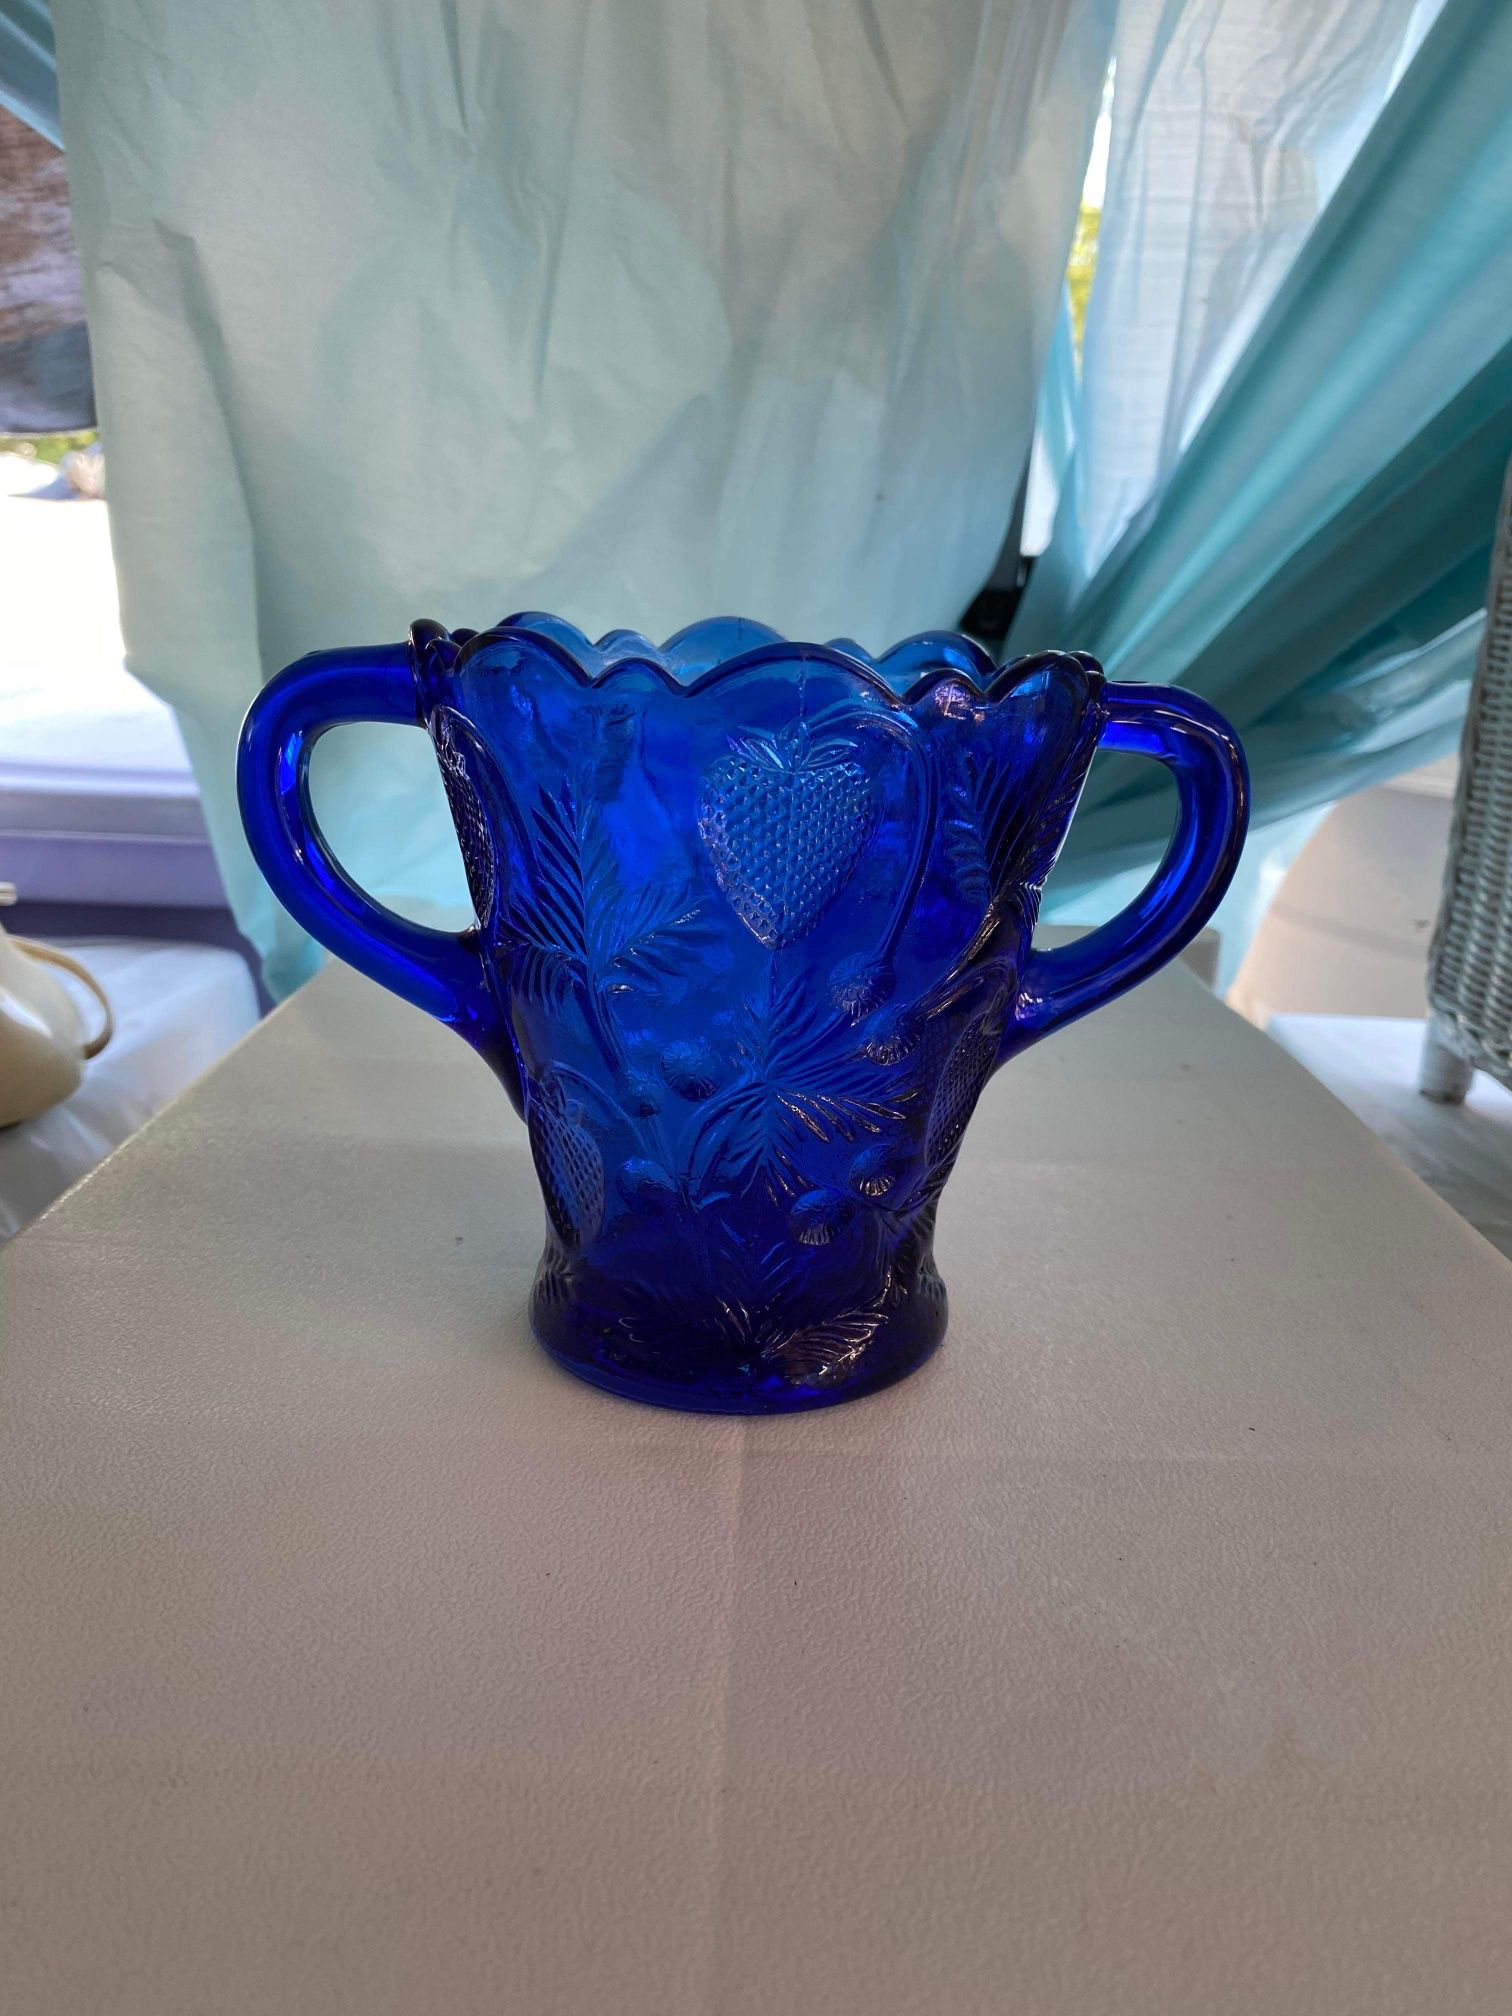 MOSSER Large Spooner Cobalt Blue Pressed Glass Inverted Strawberry Design 5"tall